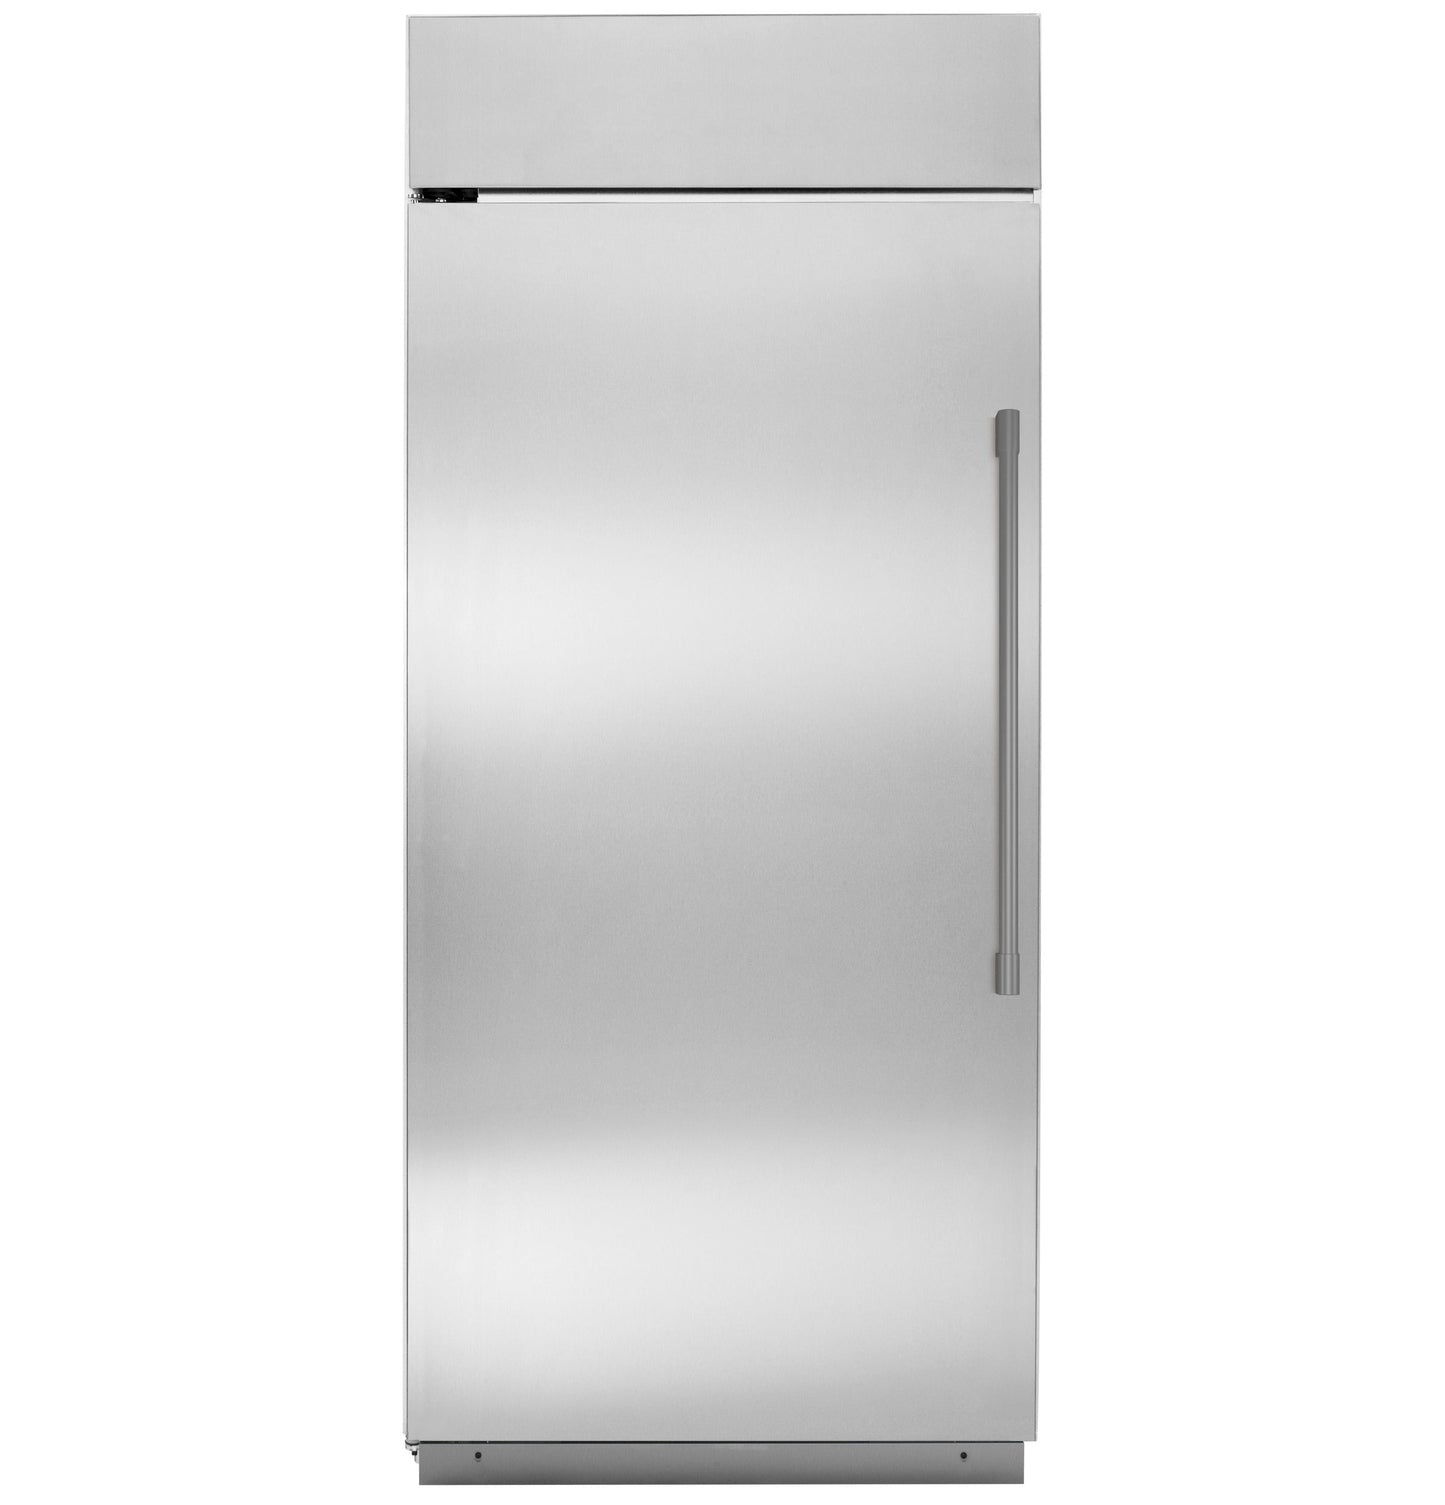 Monogram 36" Built In Left Swing Stainless Steel All Refrigerator - ZIRS360NNLH